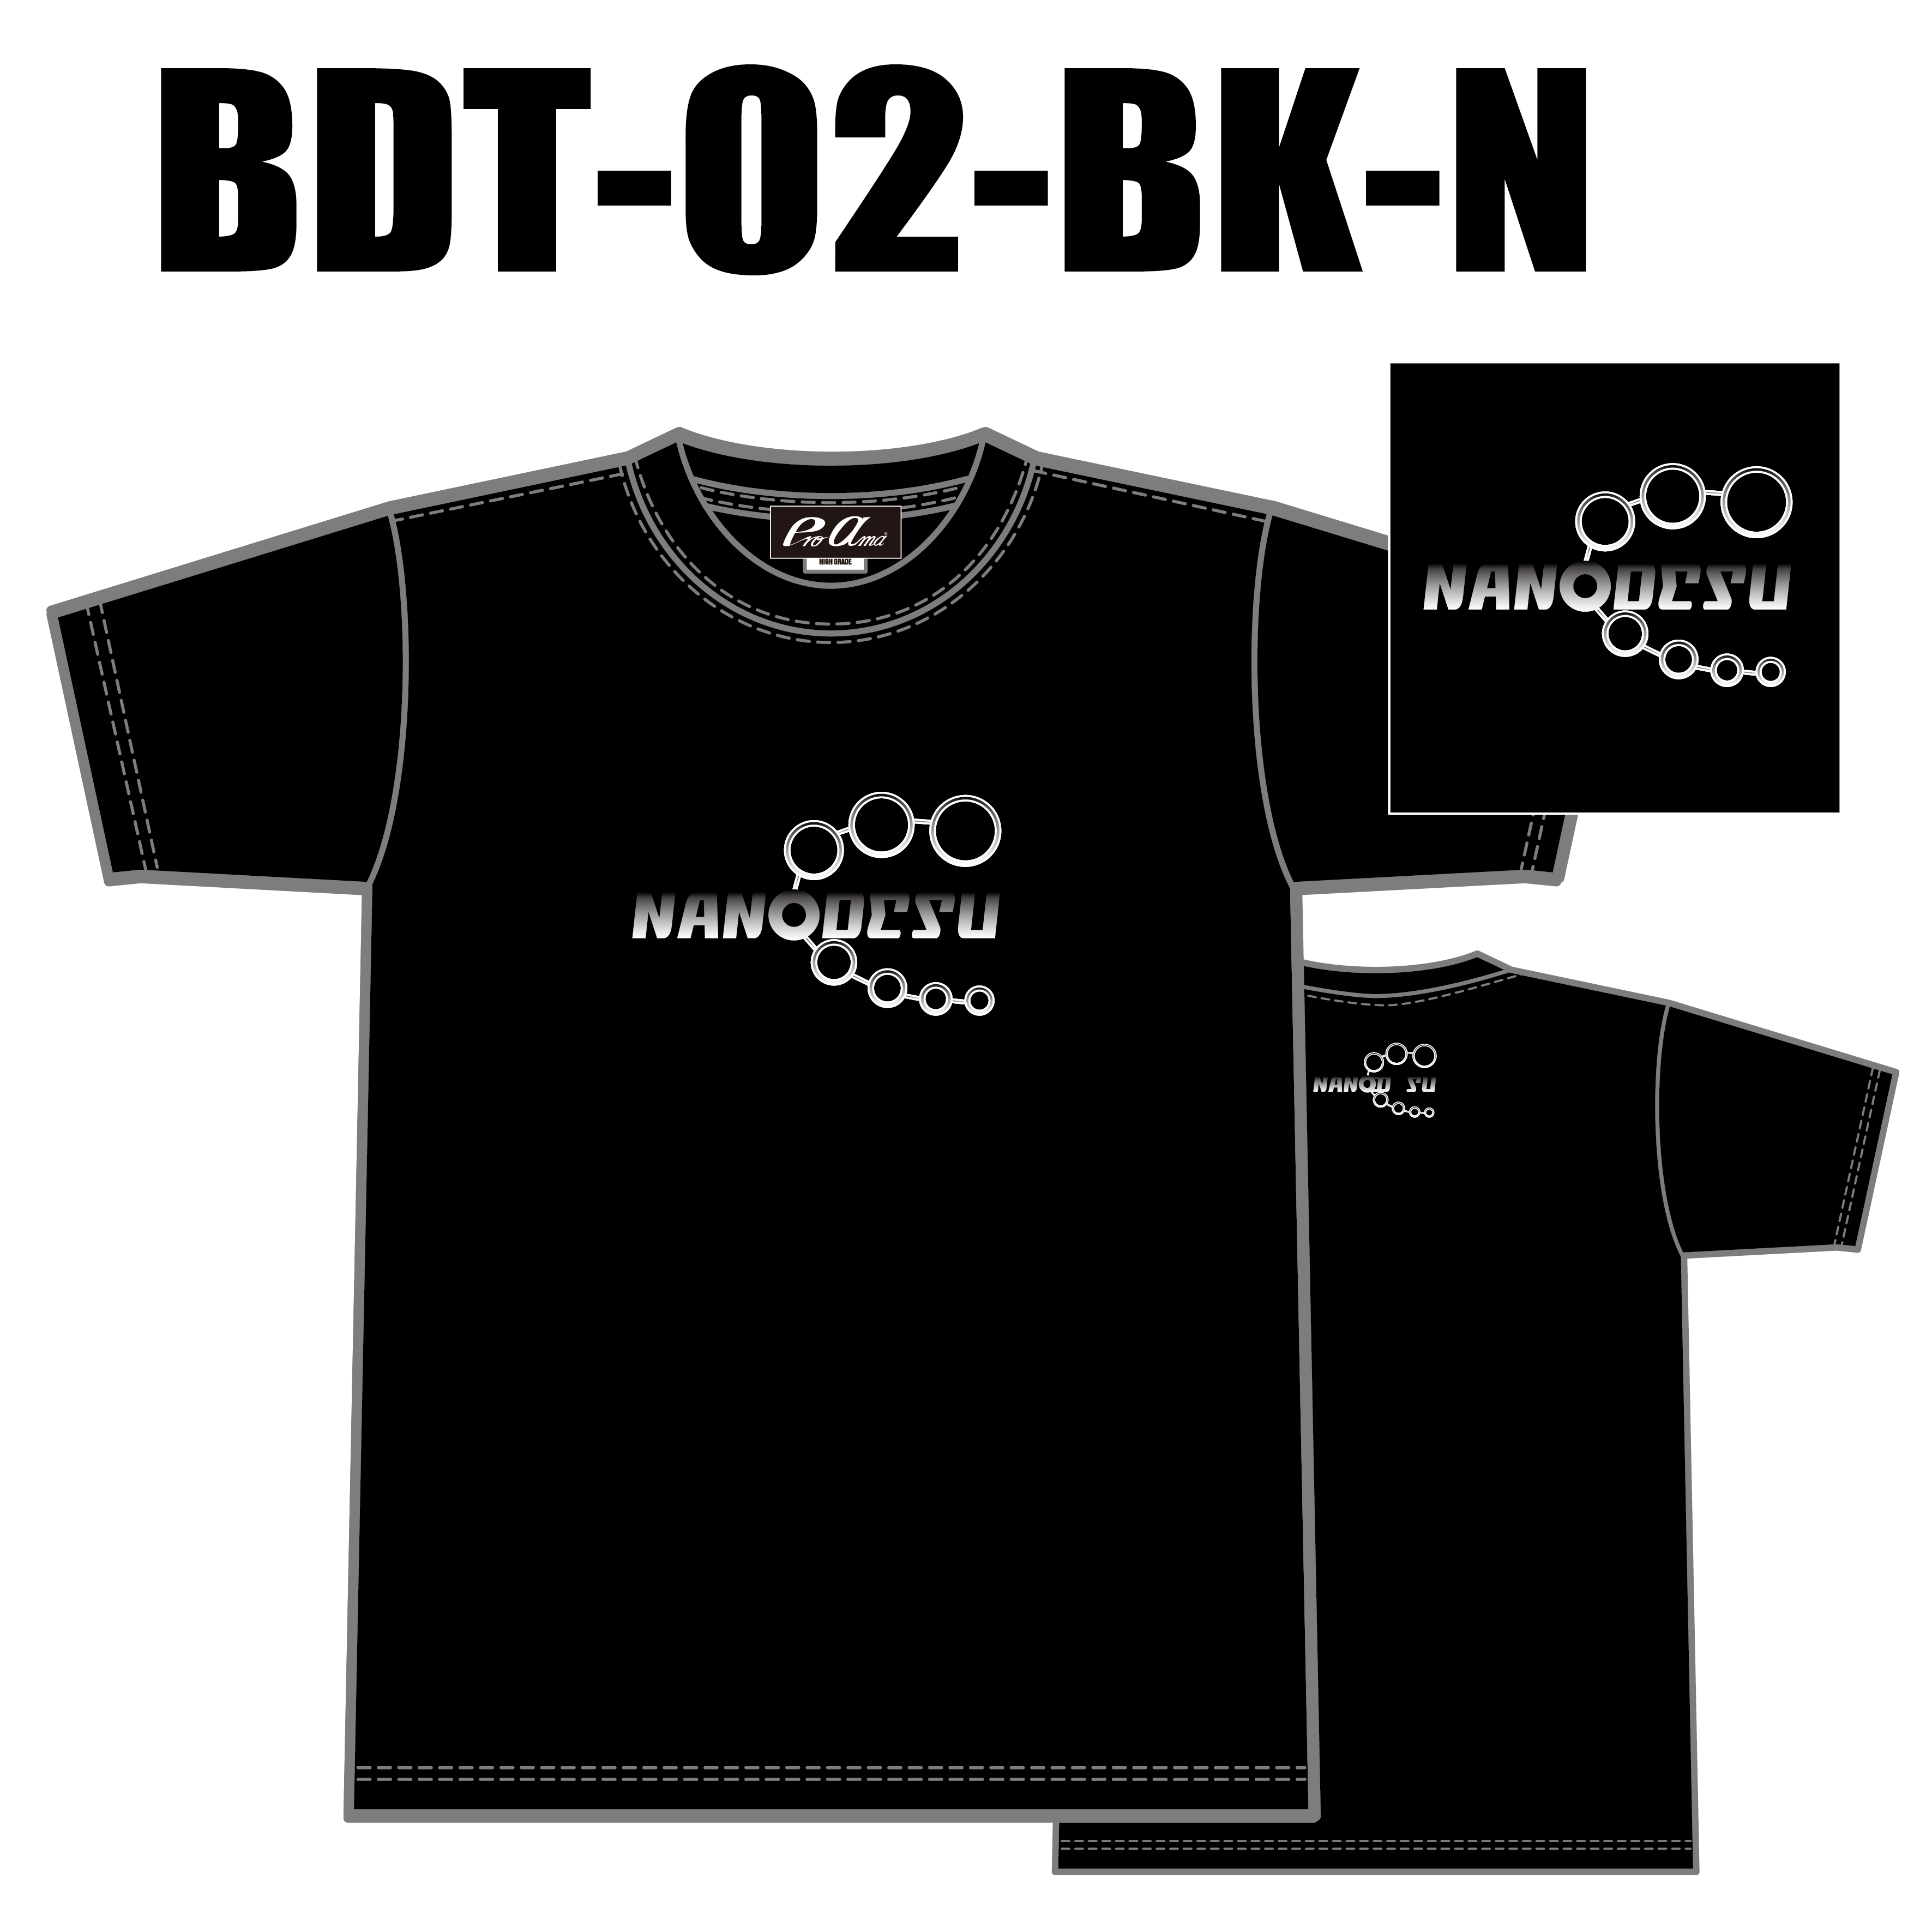 ブランドドライTシャツ BTD-02(ロゴ：NANODESU)